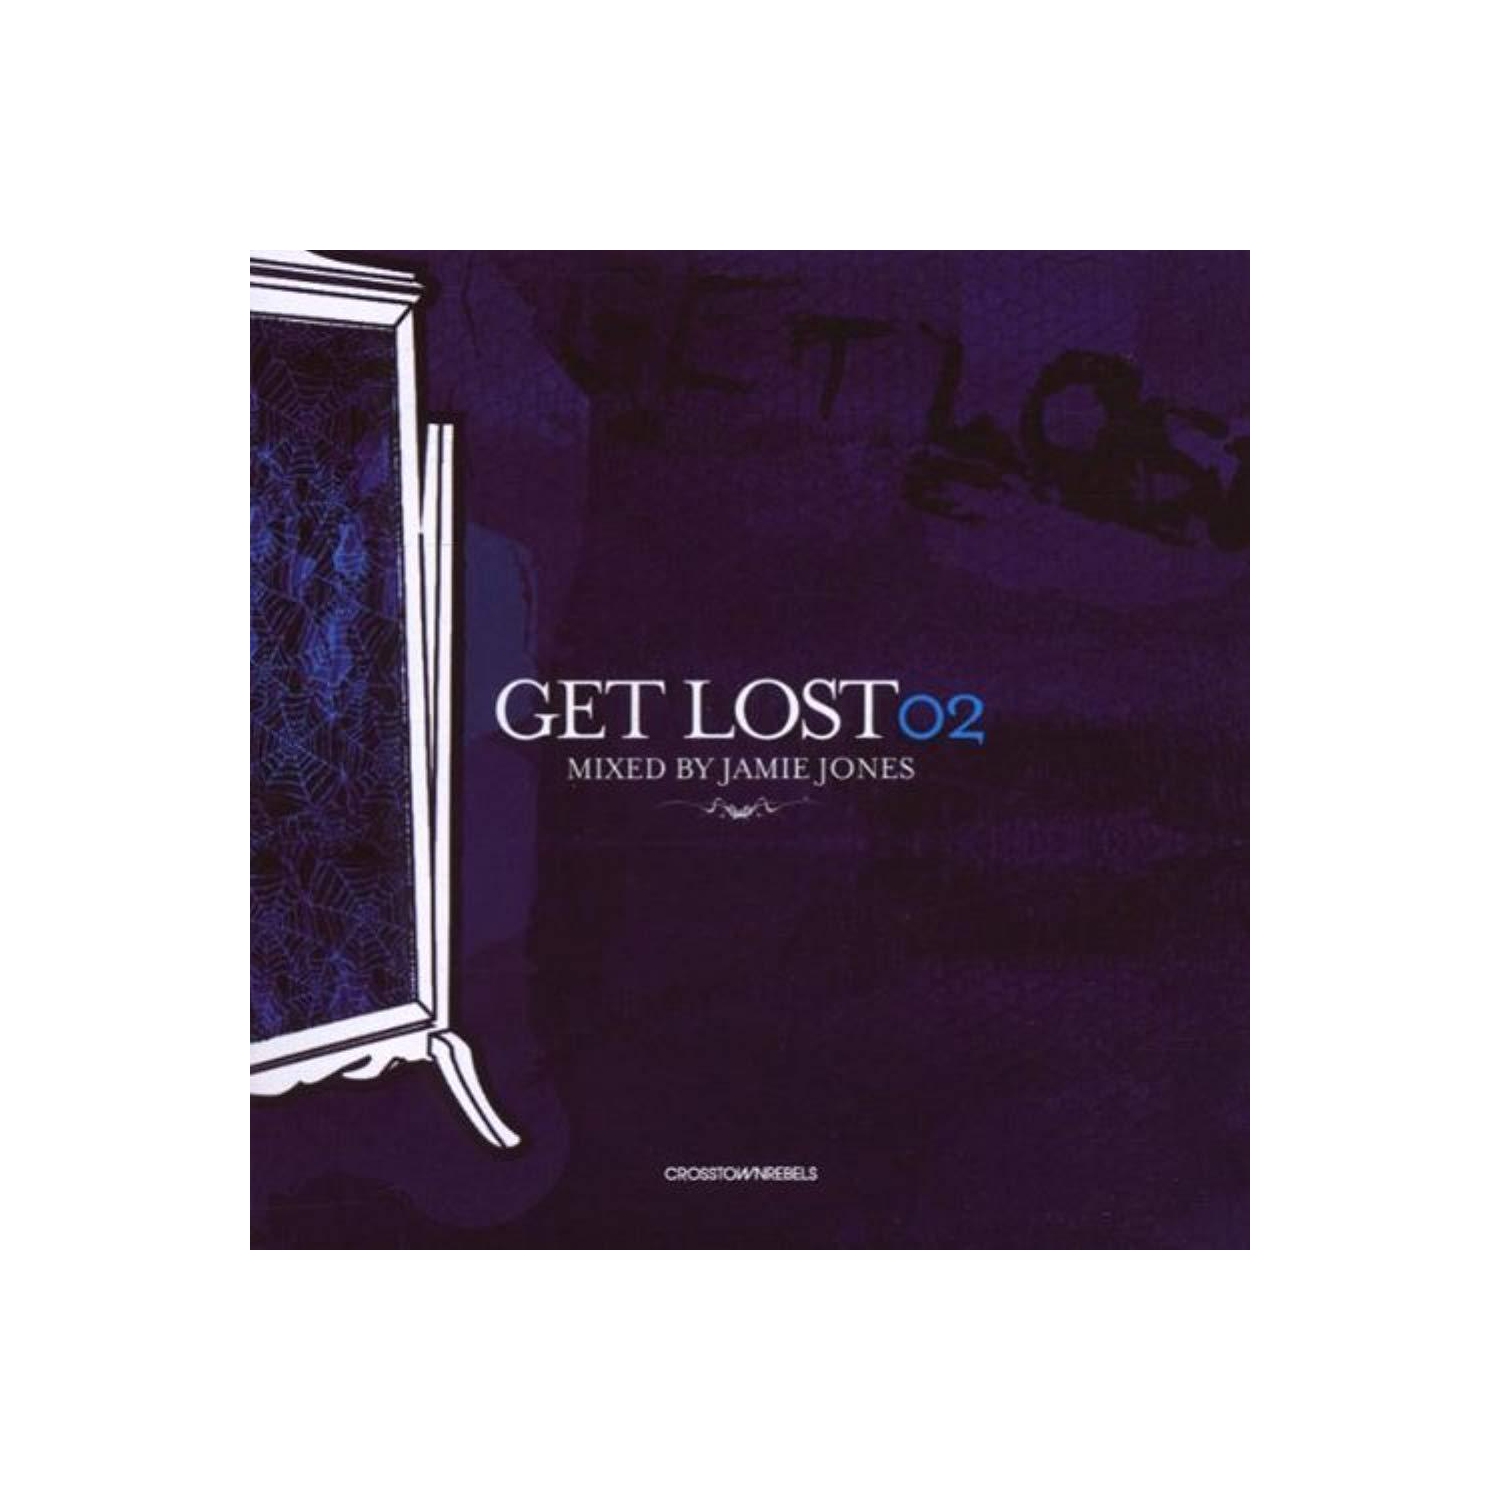 Get Lost 02 [Audio CD] Jamie Jones